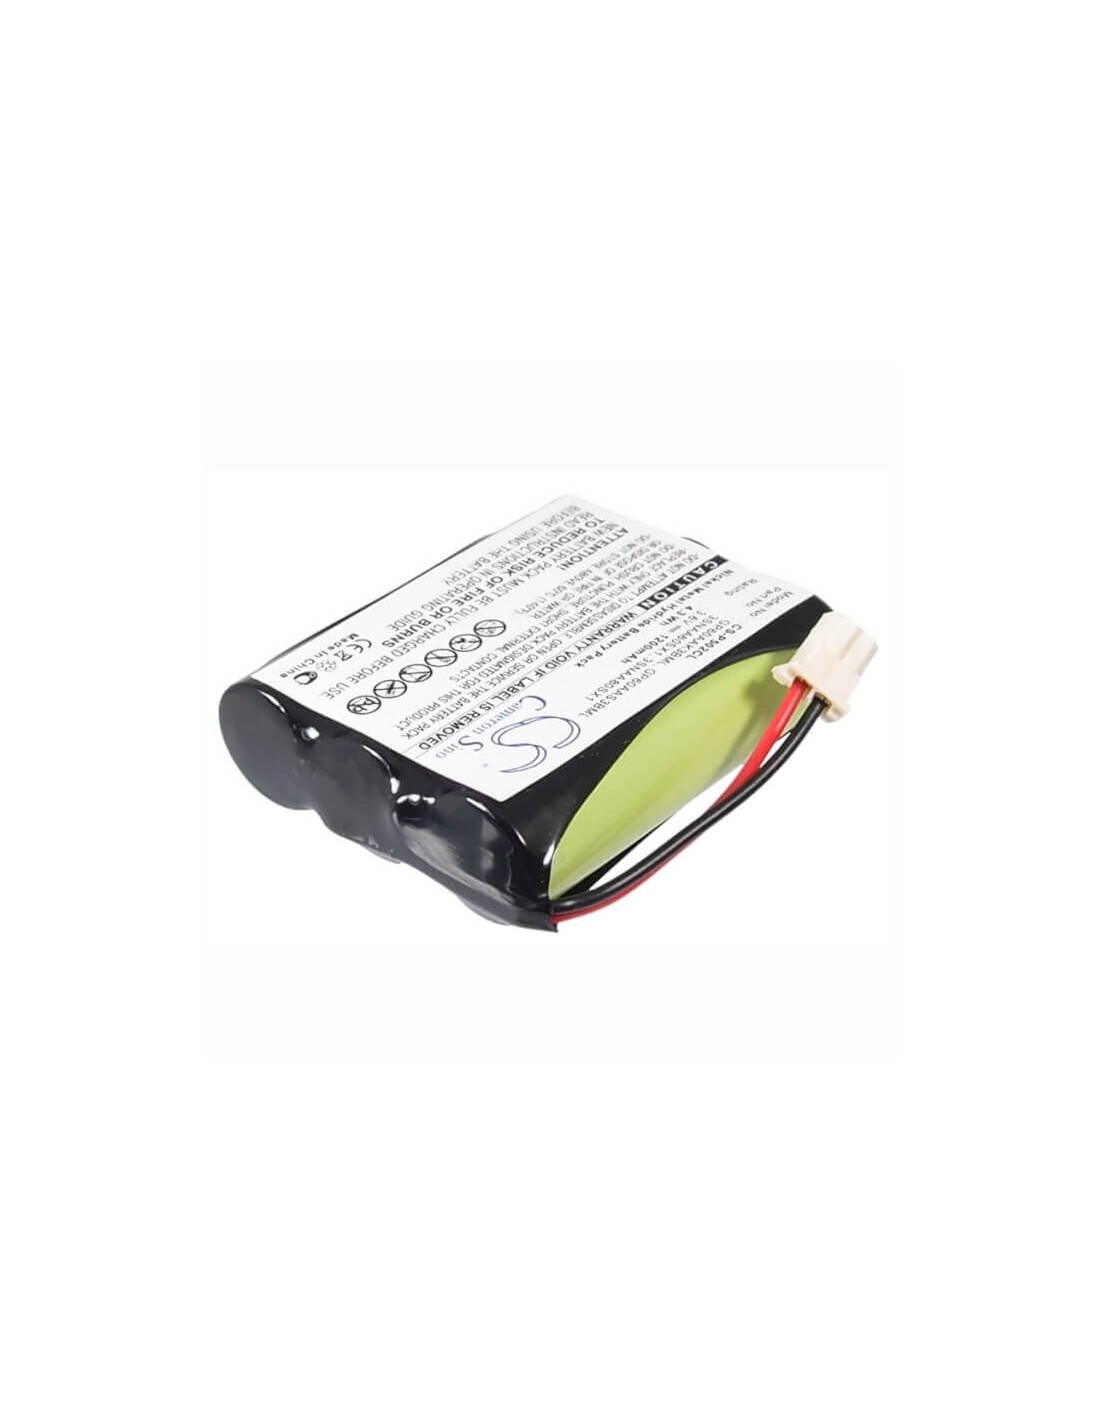 Battery for Maestro, Maestro 900dss 3.6V, 1200mAh - 4.32Wh